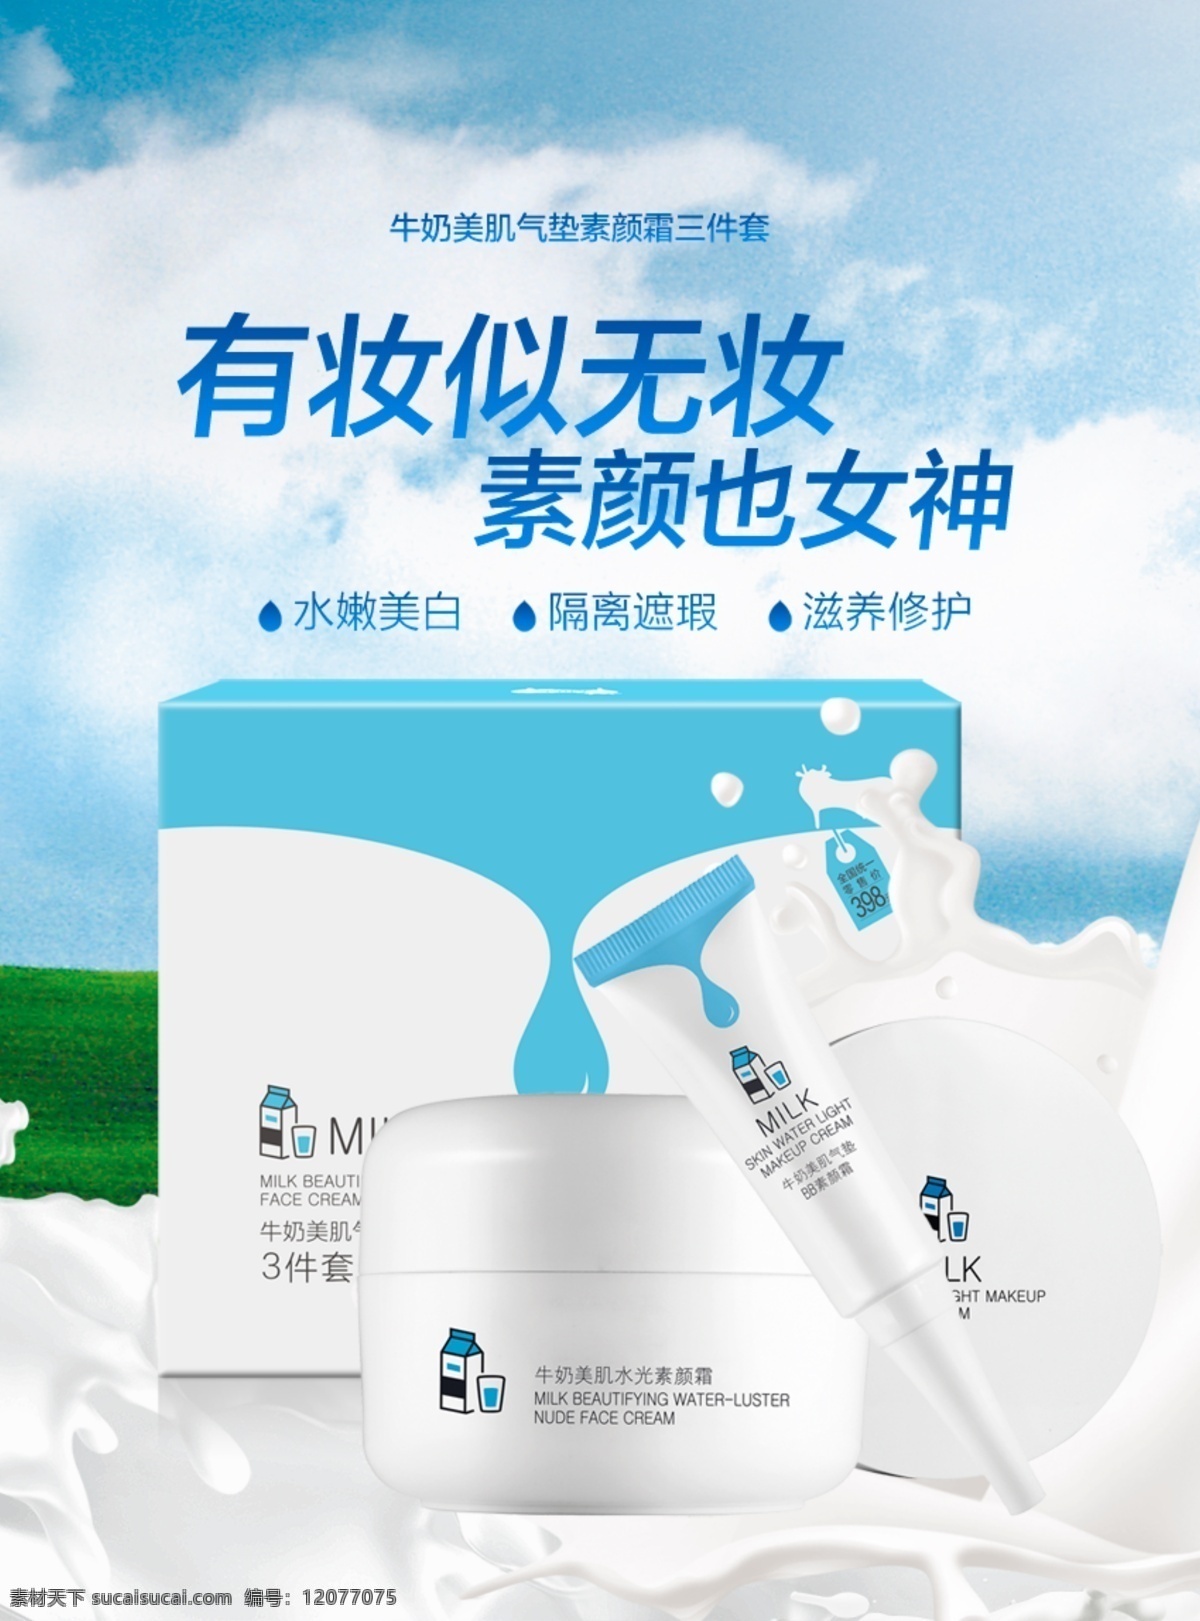 牛奶 美 肌 气垫 素 颜 霜 三 件套 牛奶套装广告 气垫海报 气垫广告 牛奶套装素材 牛奶海报